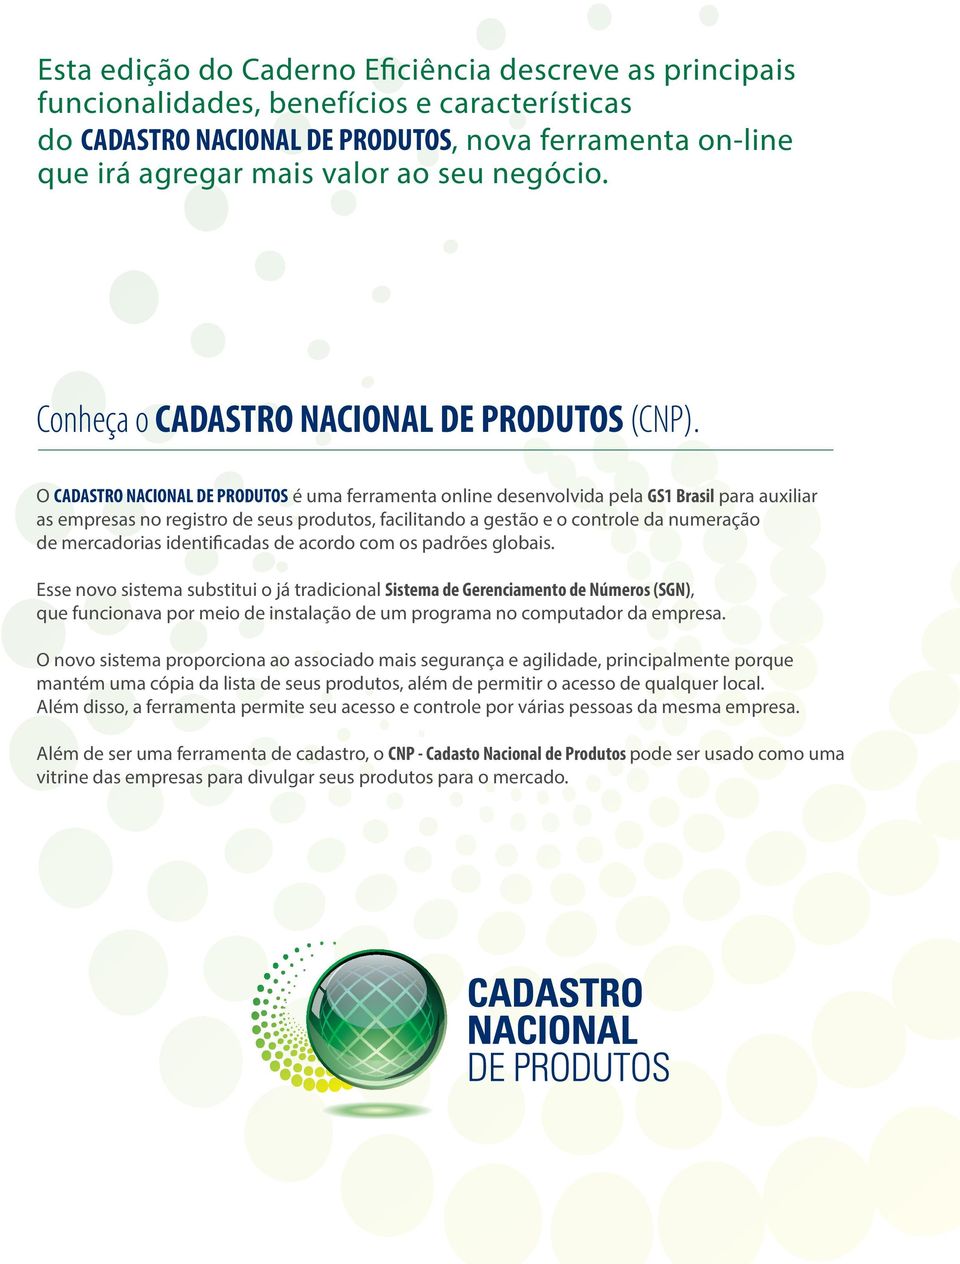 O CADASTRO NACIONAL DE PRODUTOS é uma ferramenta online desenvolvida pela GS1 Brasil para auxiliar as empresas no registro de seus produtos, facilitando a gestão e o controle da numeração de